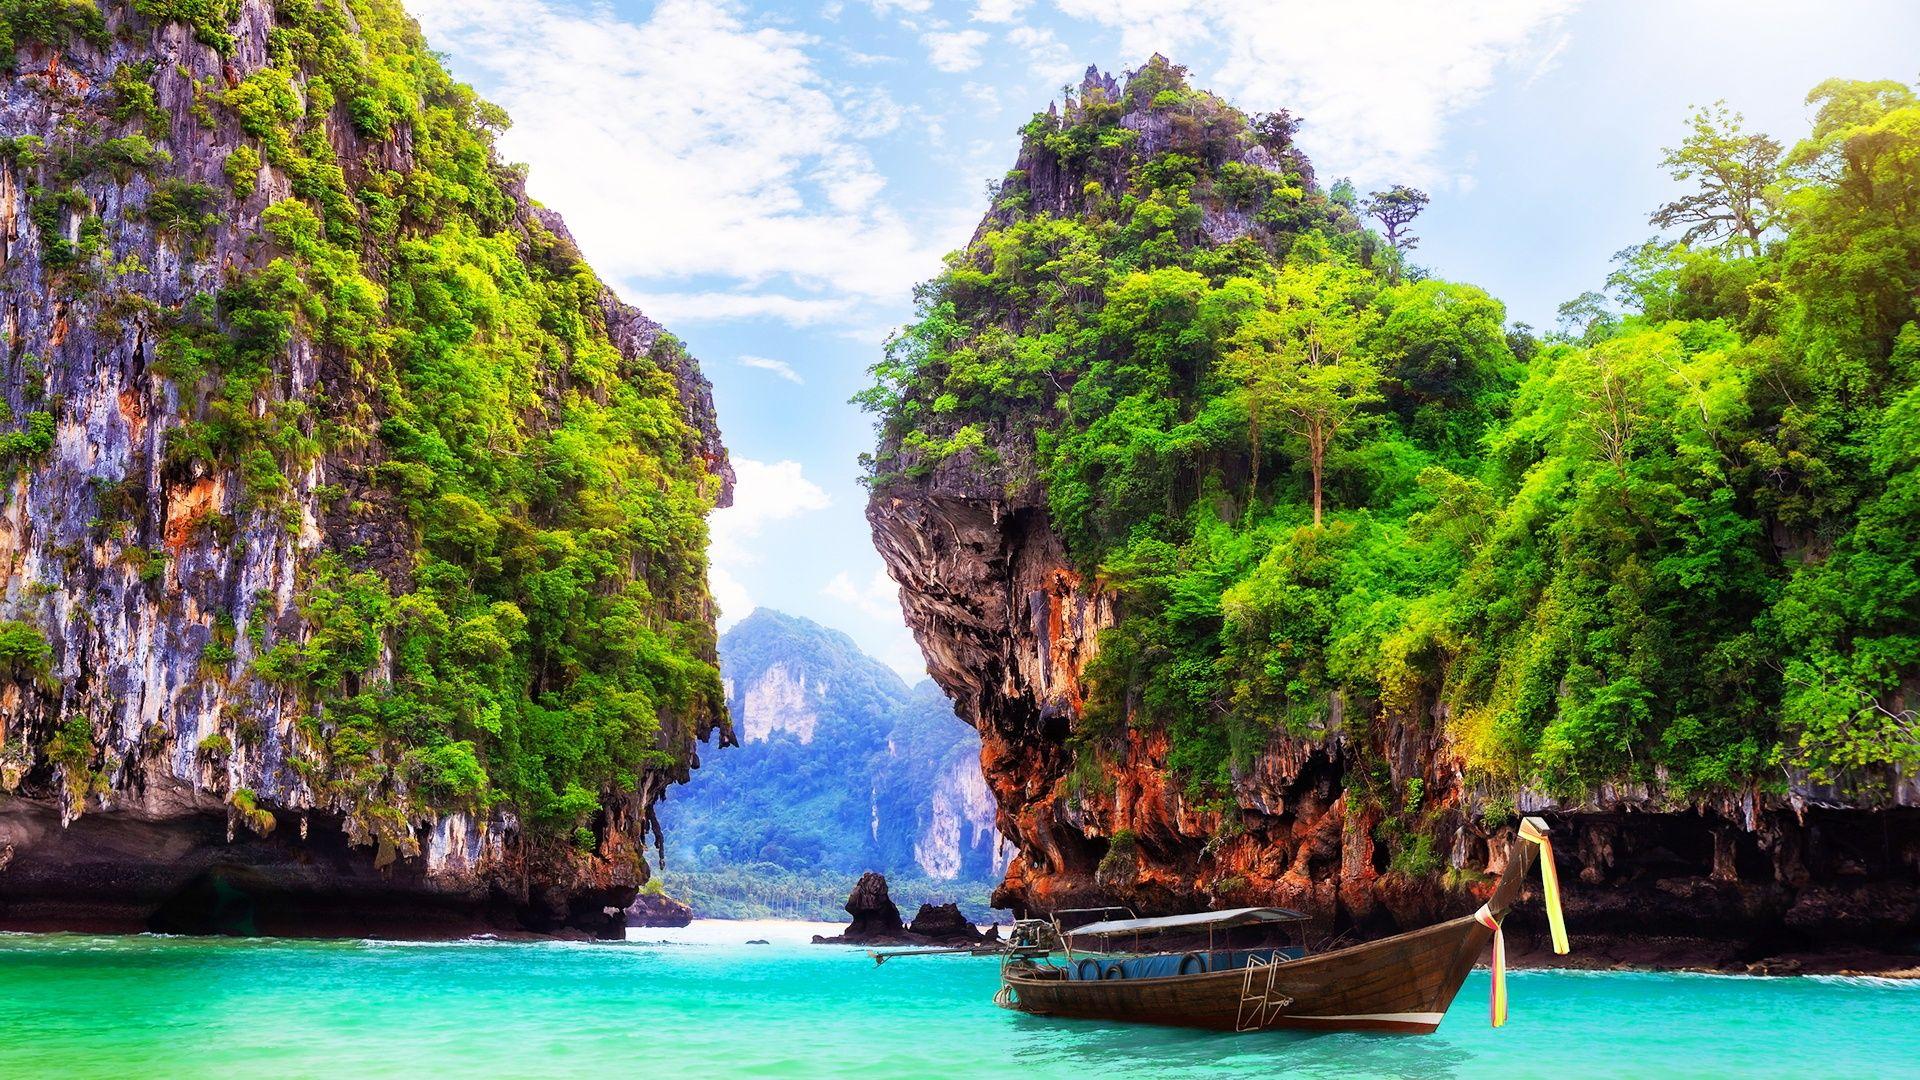  Thailand  Desktop Wallpapers  Top Free Thailand  Desktop 